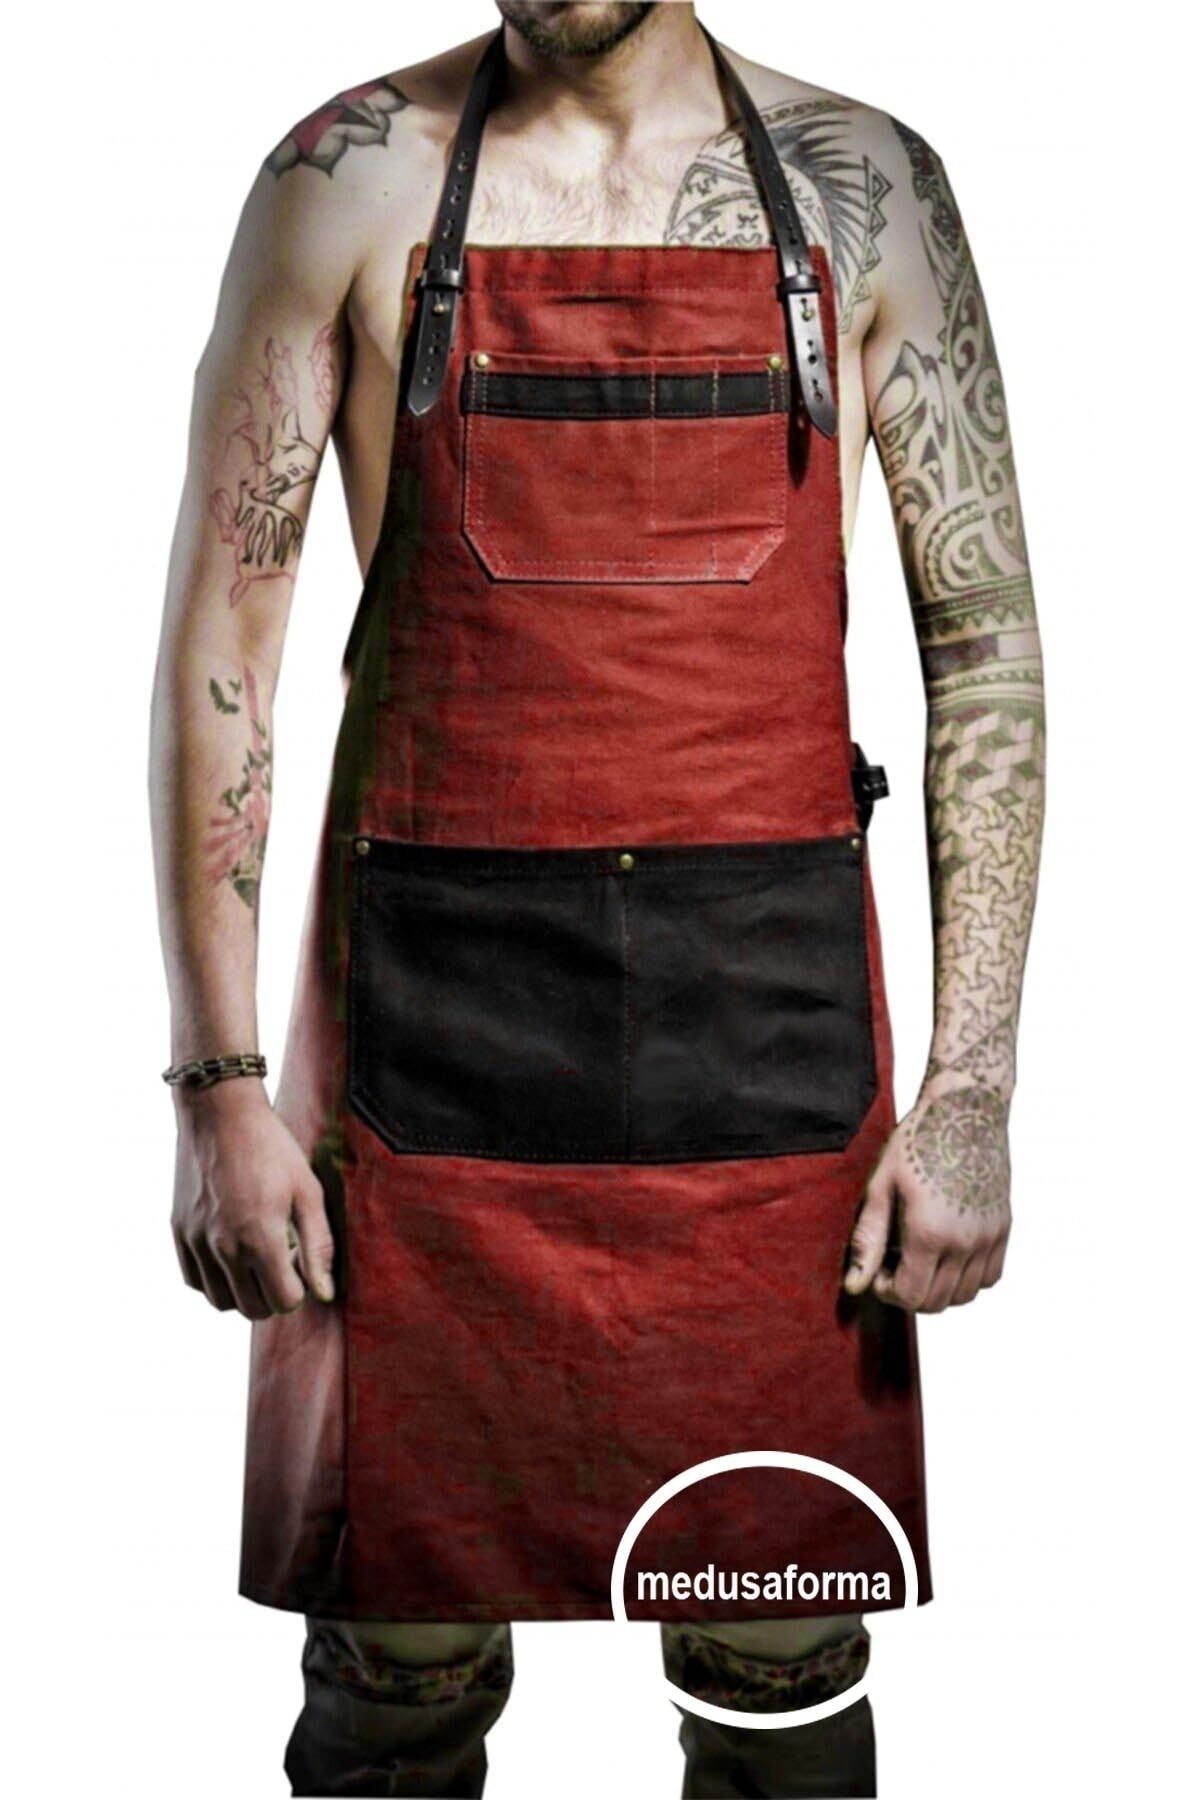 medusaforma Askılı Mutfak Önlüğü Master Chef Cafe Şef Garson Aşçı Kuaför Sanat Tattoo Barista Önlükı - Kırmızı